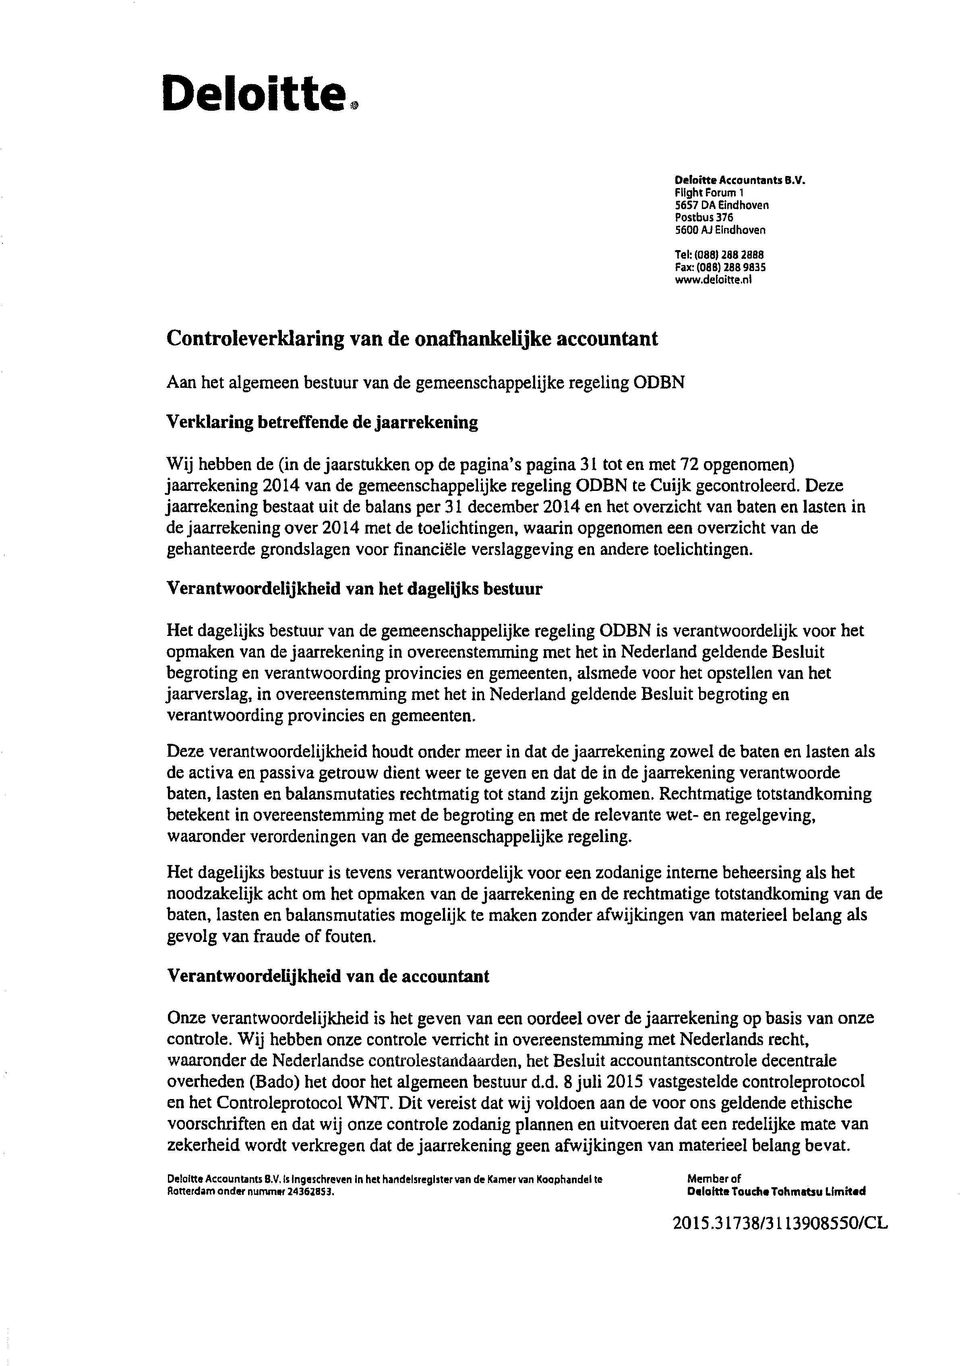 pagina's pagina 31 tot en met 72 opgenomen) jaarrekening 2014 van de gemeenschappelijke regeling ODBN te Cuijk gecontroleerd.